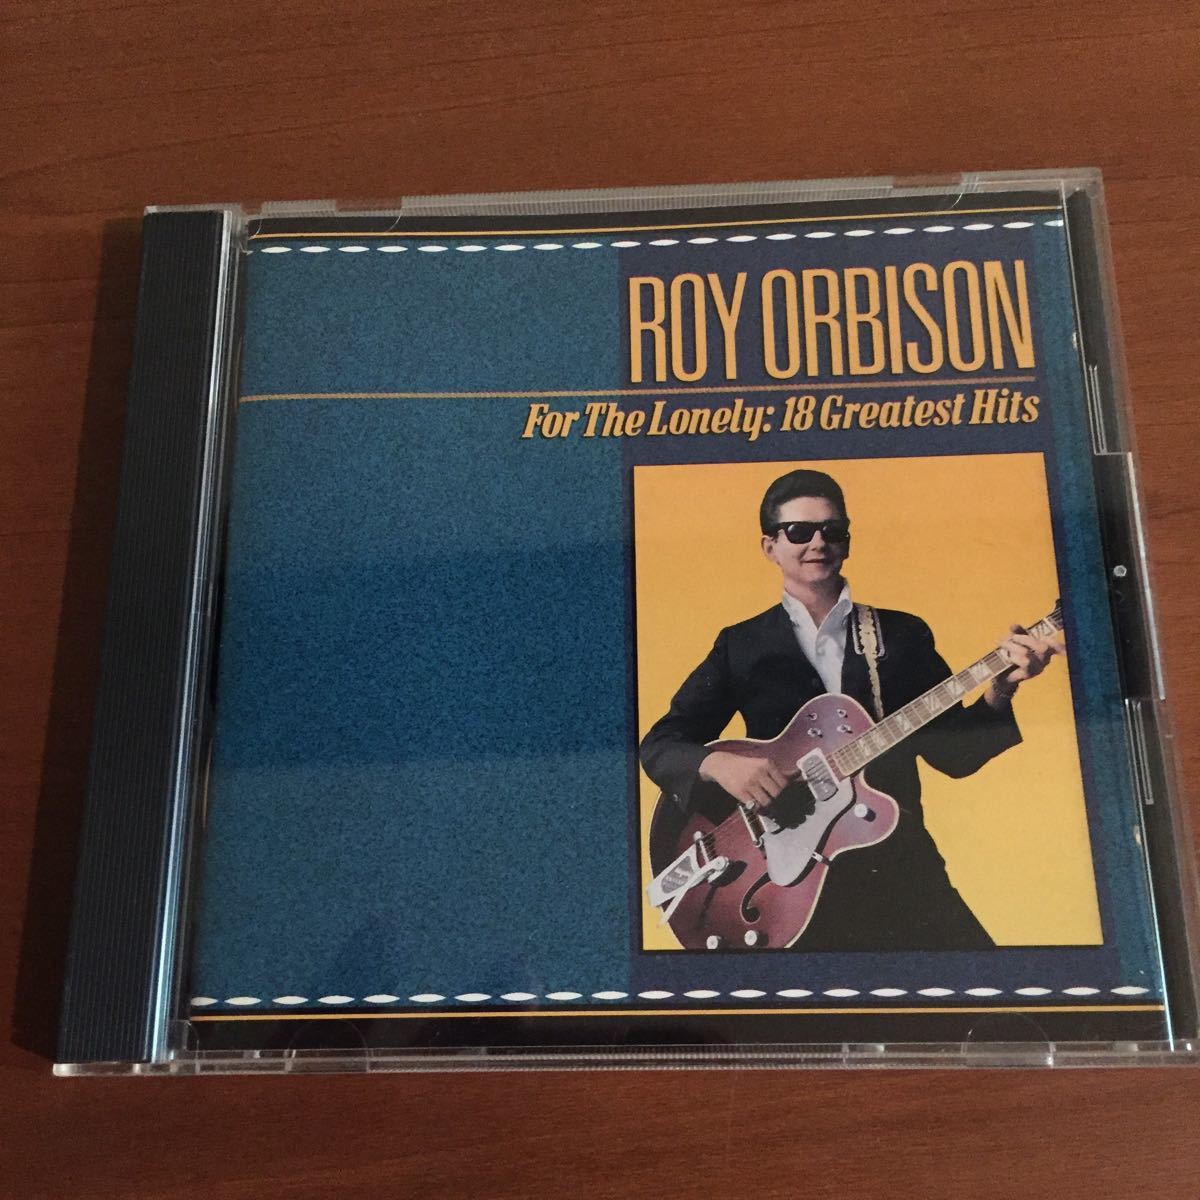 送料無料Roy Orbison「For The lonley:18 Greatest Hits」状態良好 ベスト盤 名曲 ロイ・オービソン